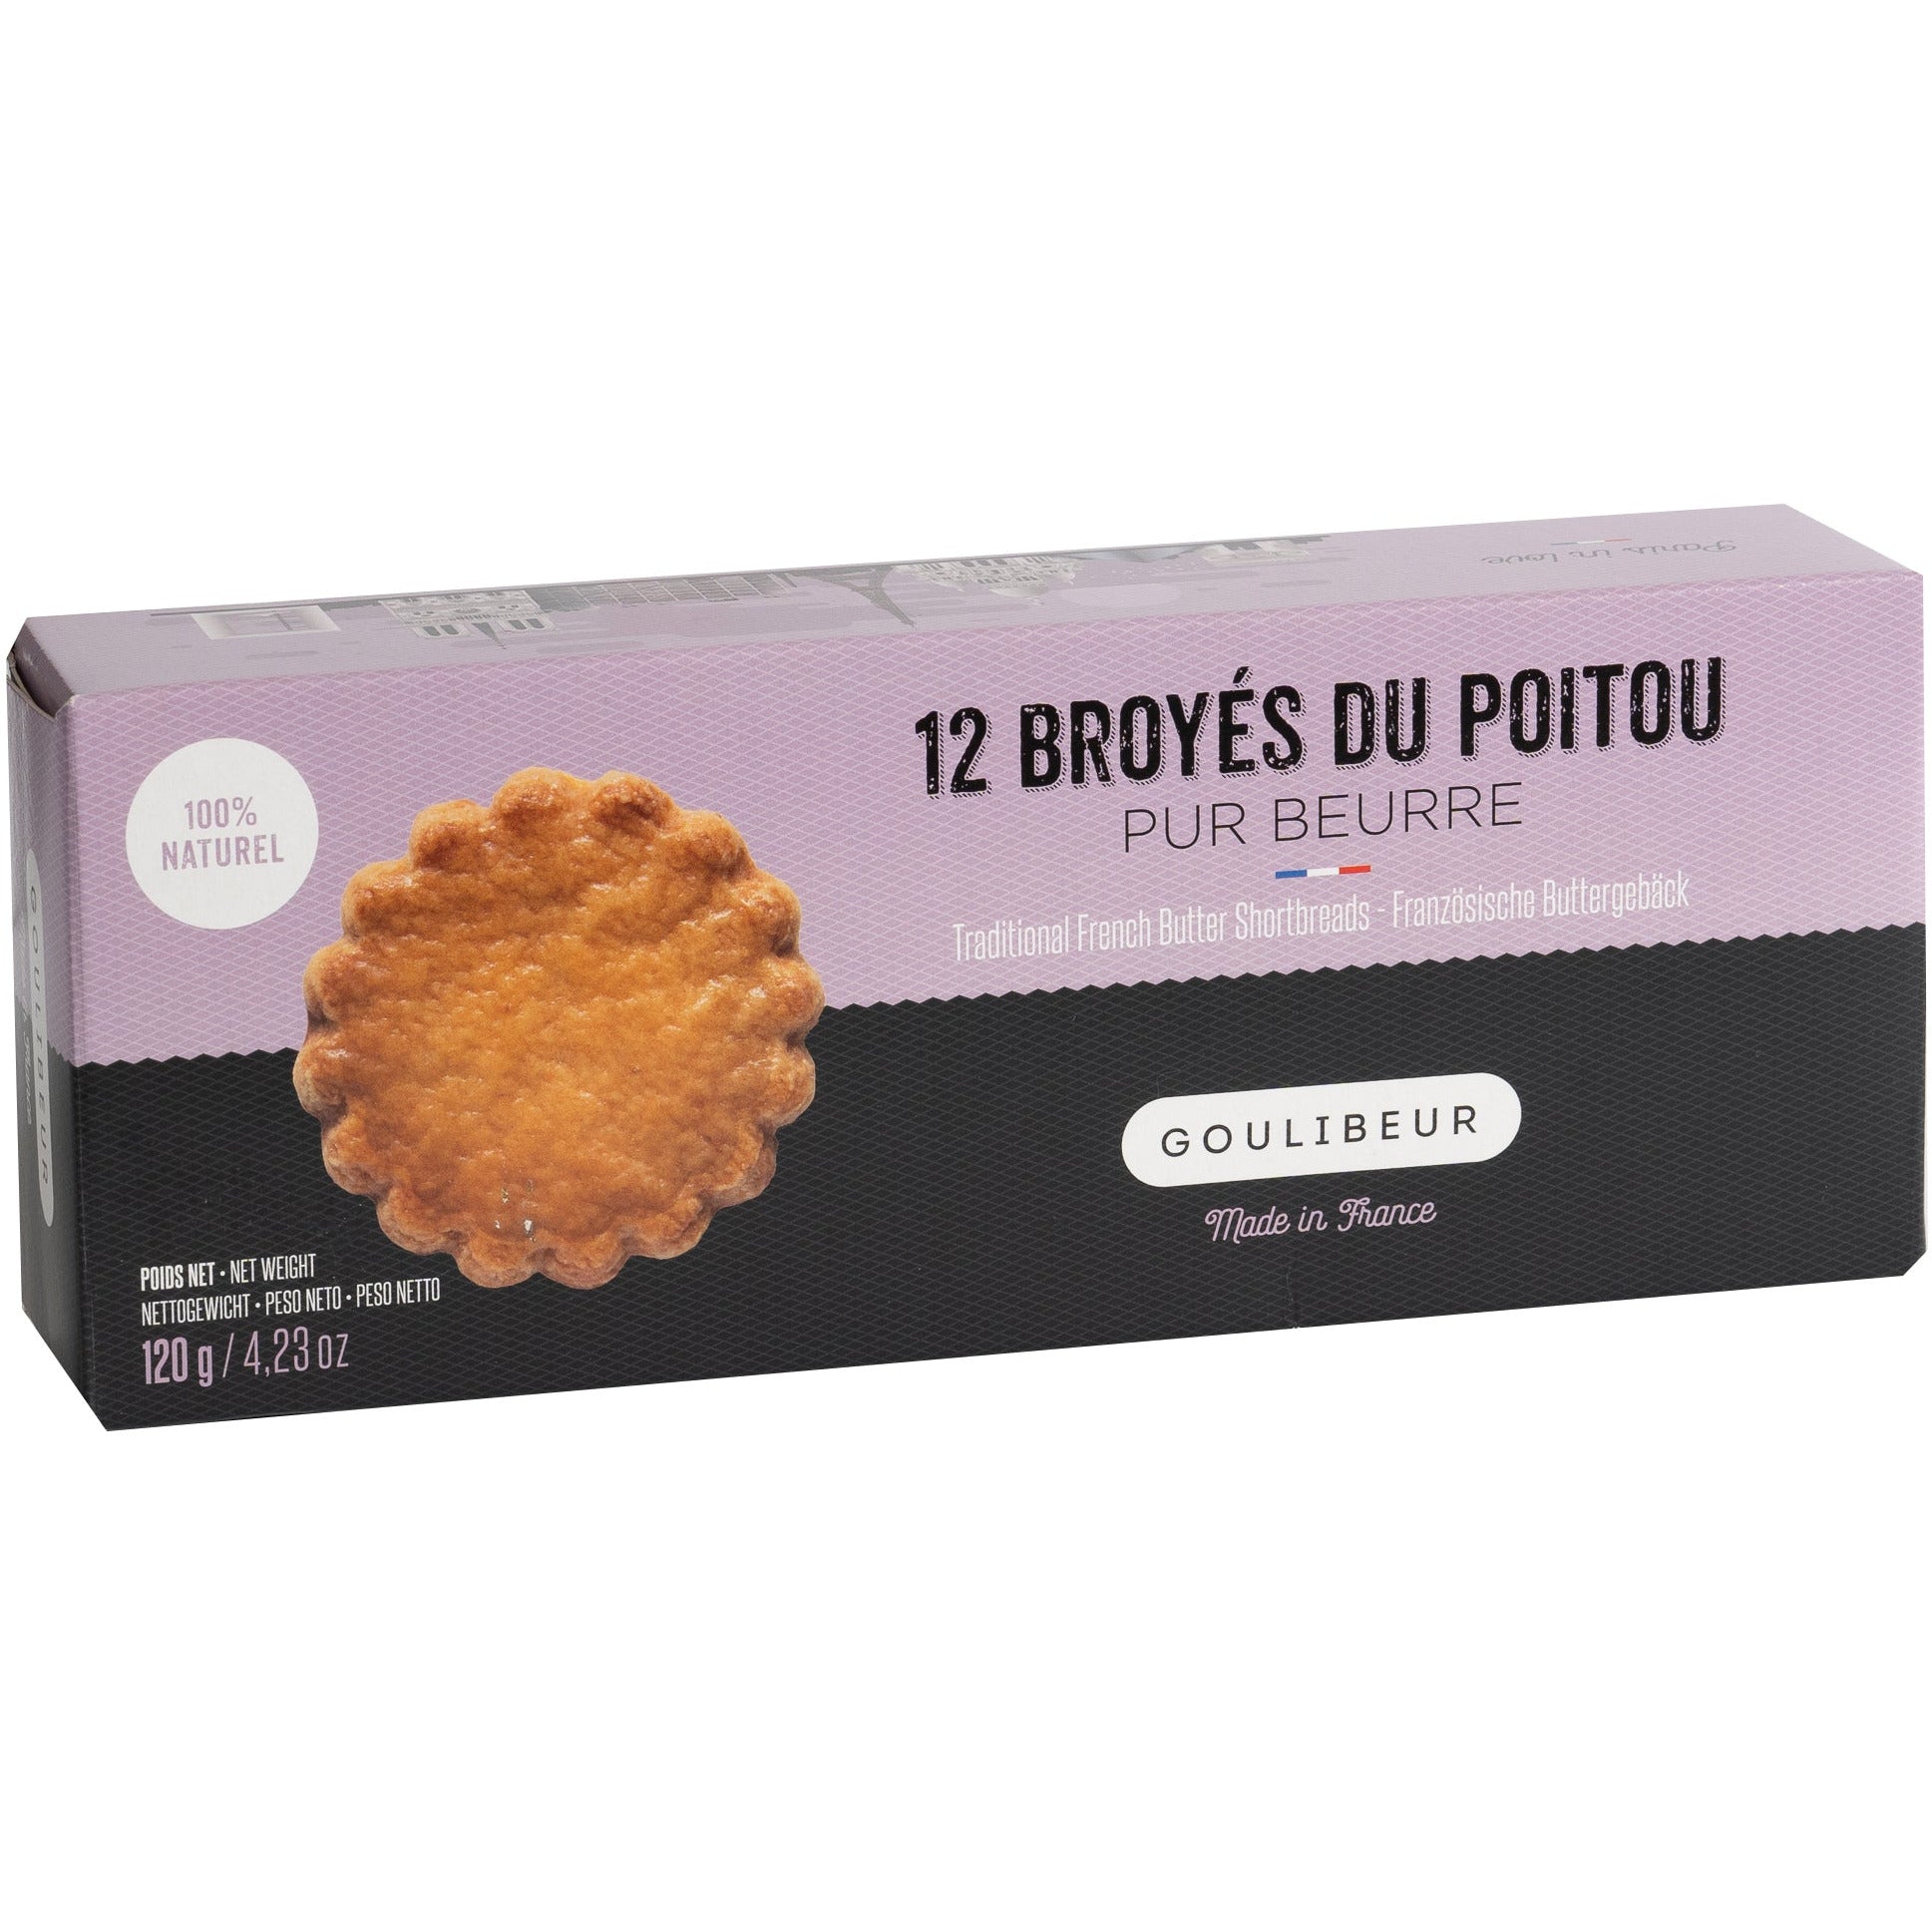 Biscuits au beurre français (Broyés du Poitou)